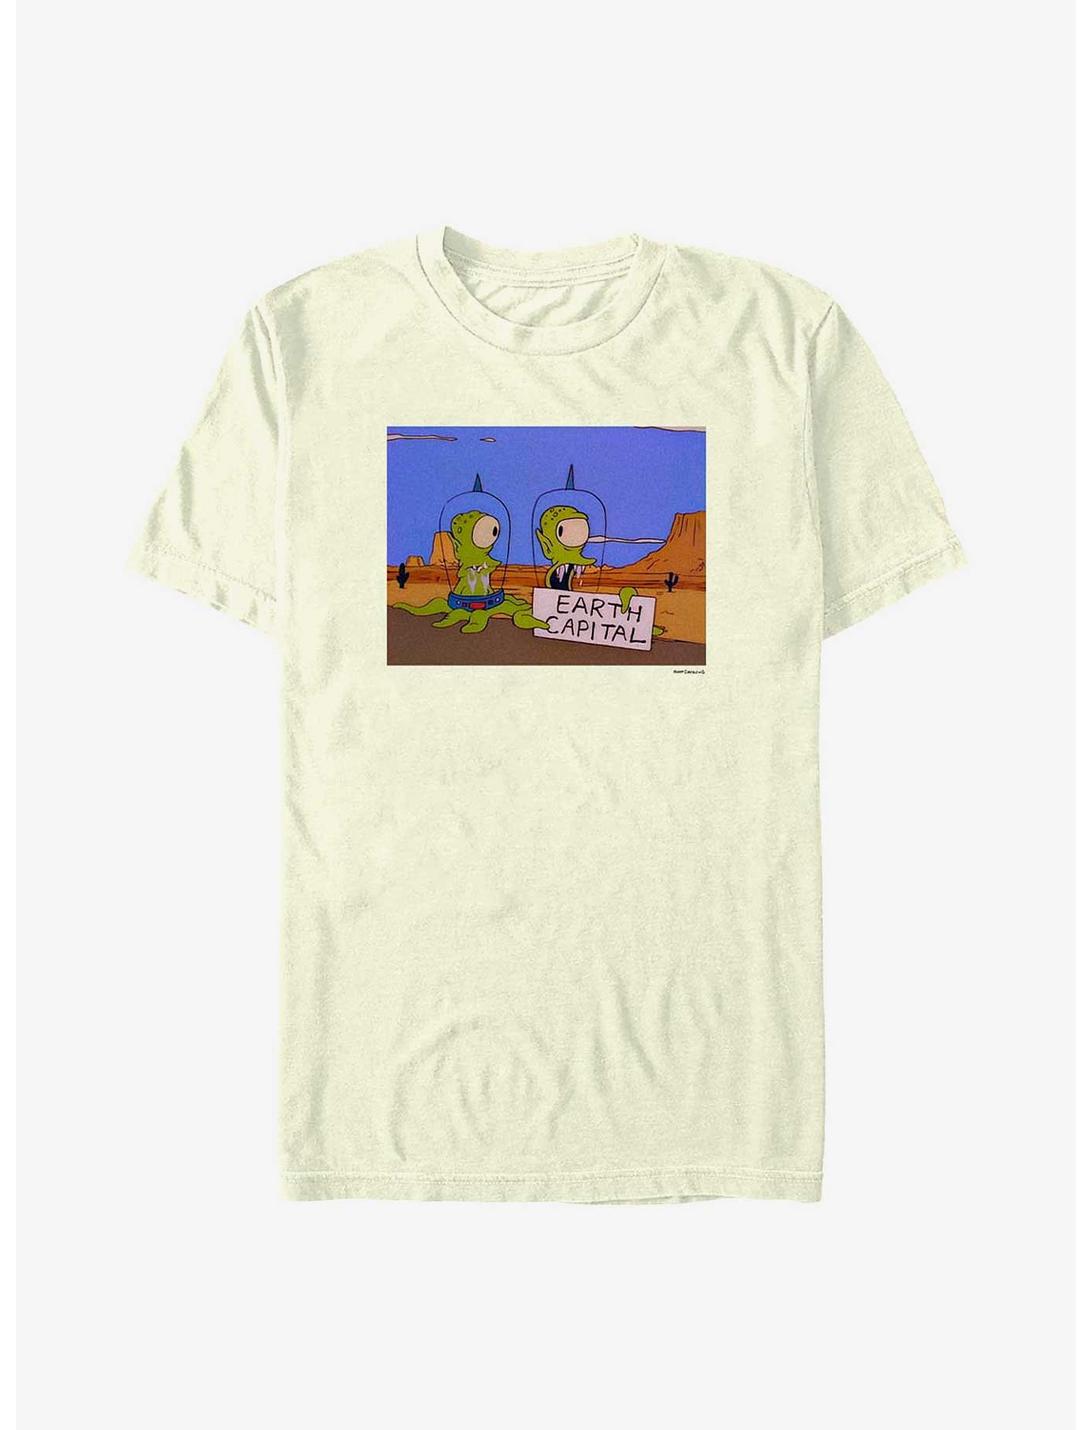 The Simpsons Kang & Kodos Aliens Earth Capital T-Shirt, NATURAL, hi-res